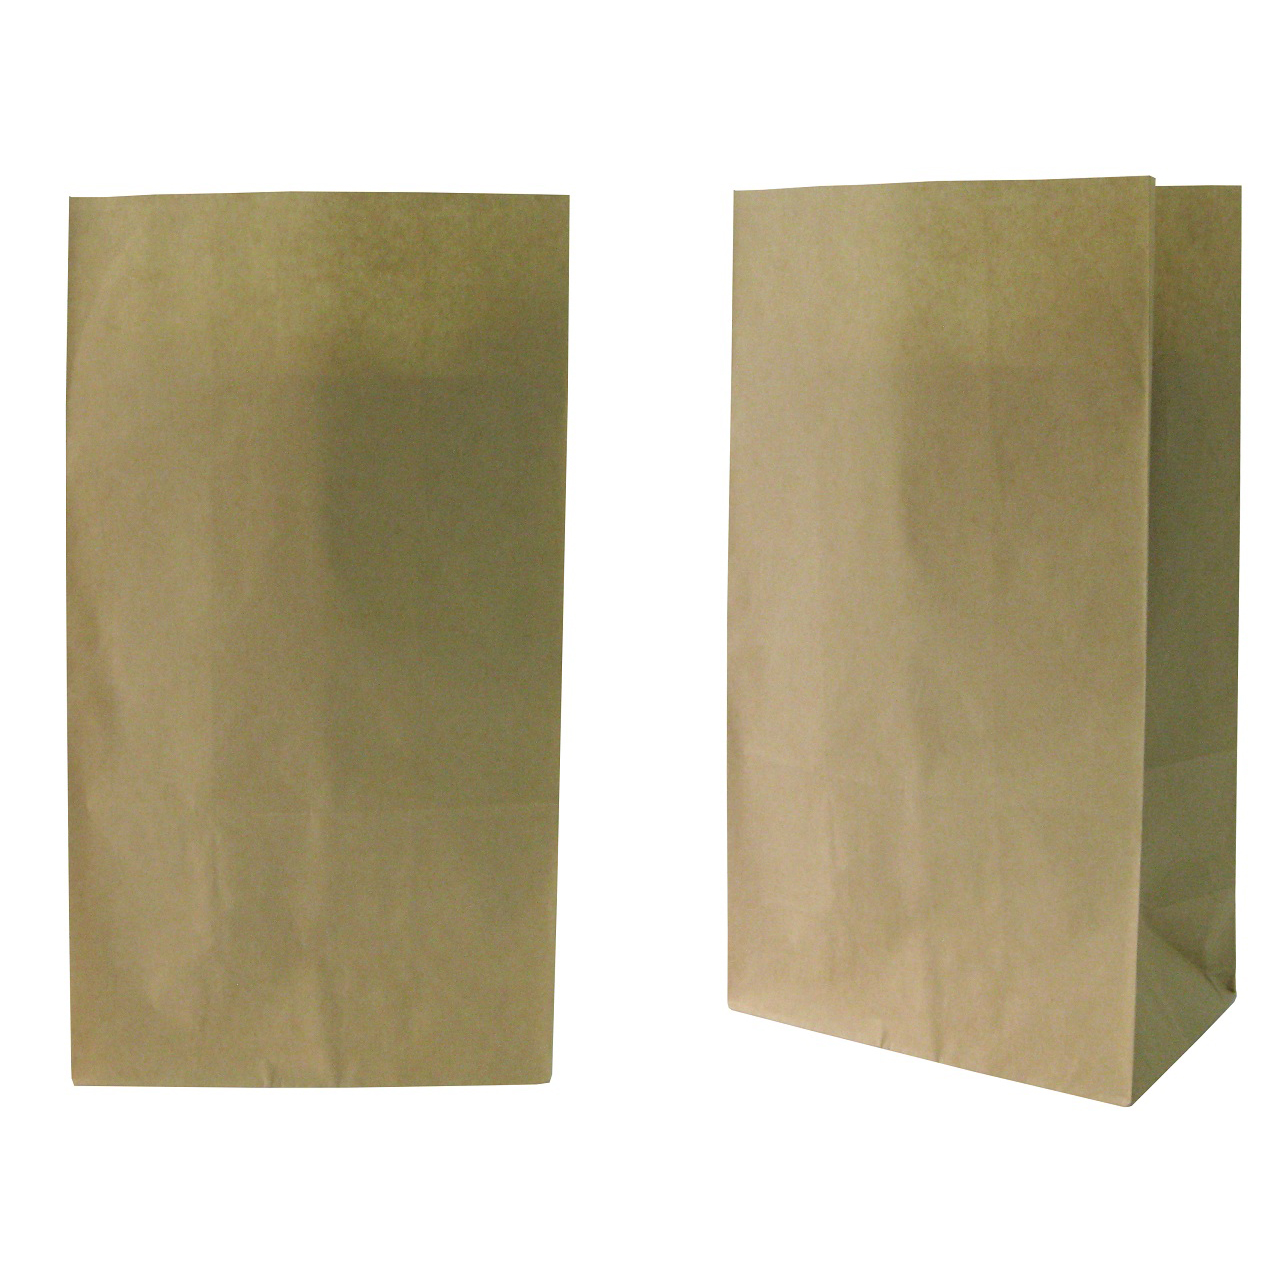 ถุงกระดาษมีก้น 50 แกรม สีน้ำตาล ขนาด 15x9x27 cm. (20 ใบ/แพ็ค)